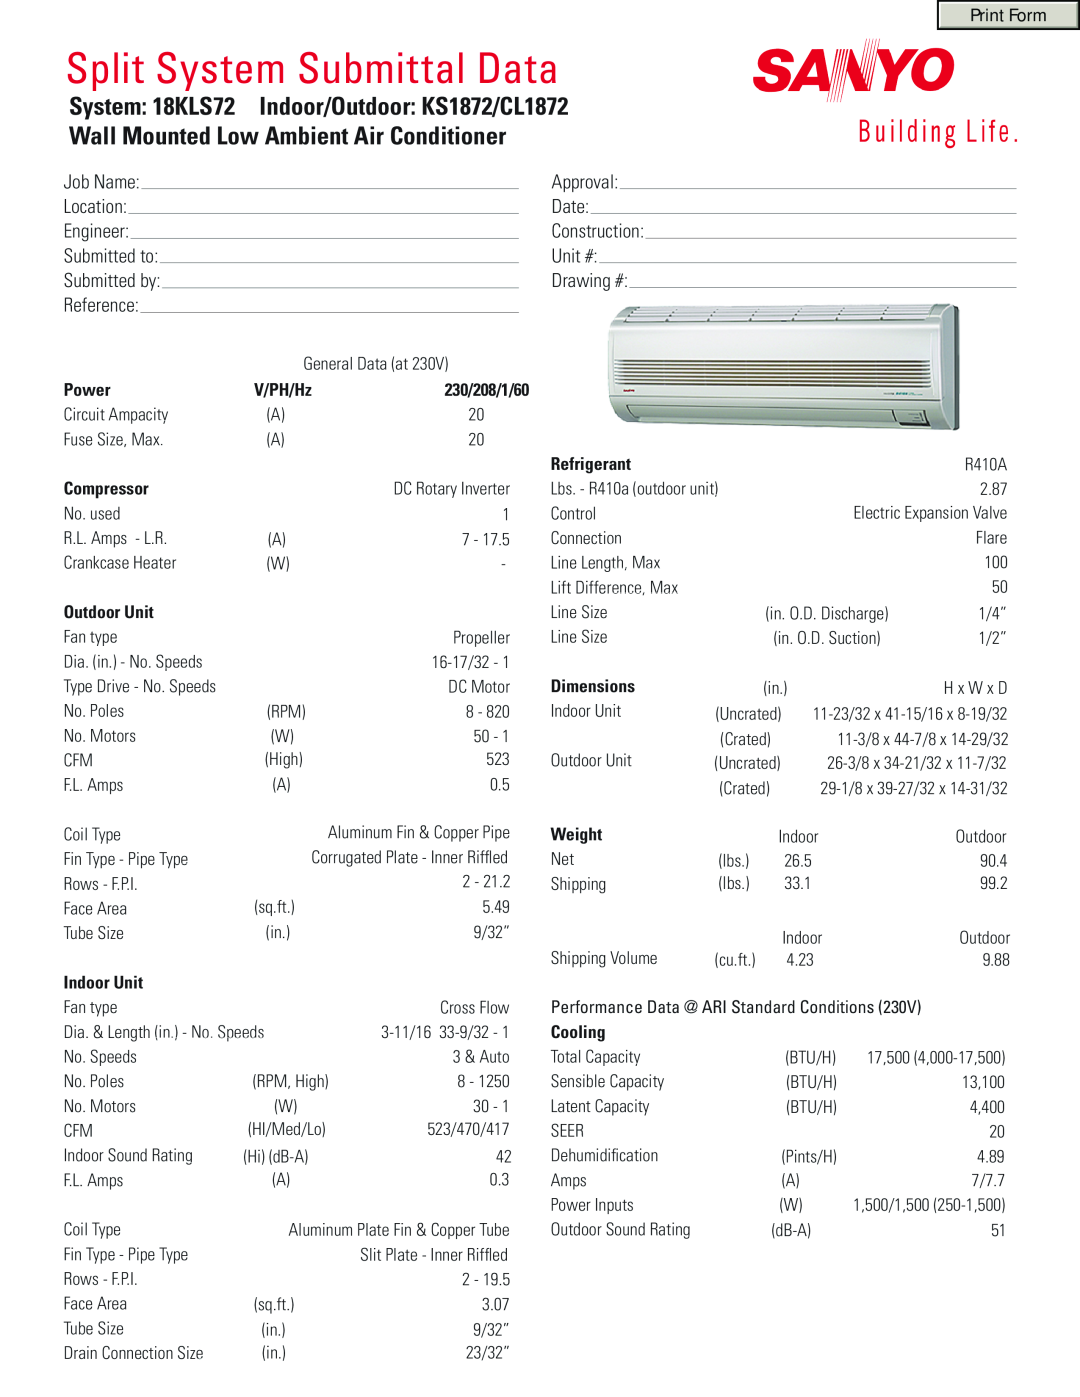 Sanyo 18KLS72 dimensions Power, 230/208/1/60, Compressor, Outdoor Unit, Indoor Unit, Refrigerant, Dimensions, Weight 